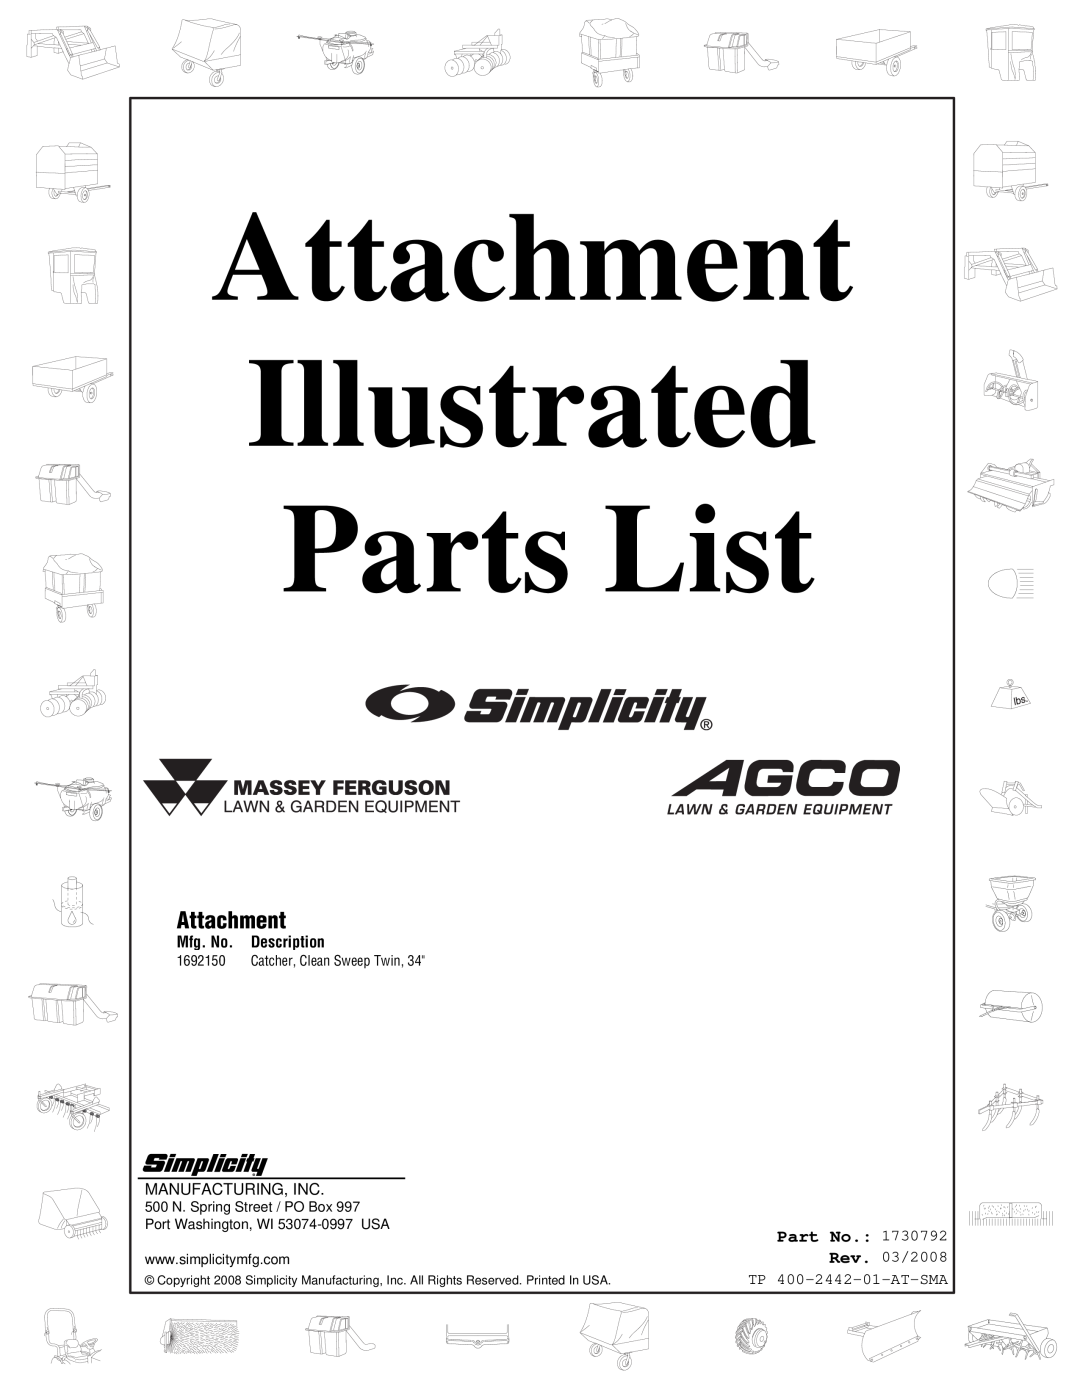 Snapper 2442 manual Attachment, Part No, Mfg. No, Description, Illustrated, Parts List, Rev. 03/2008 